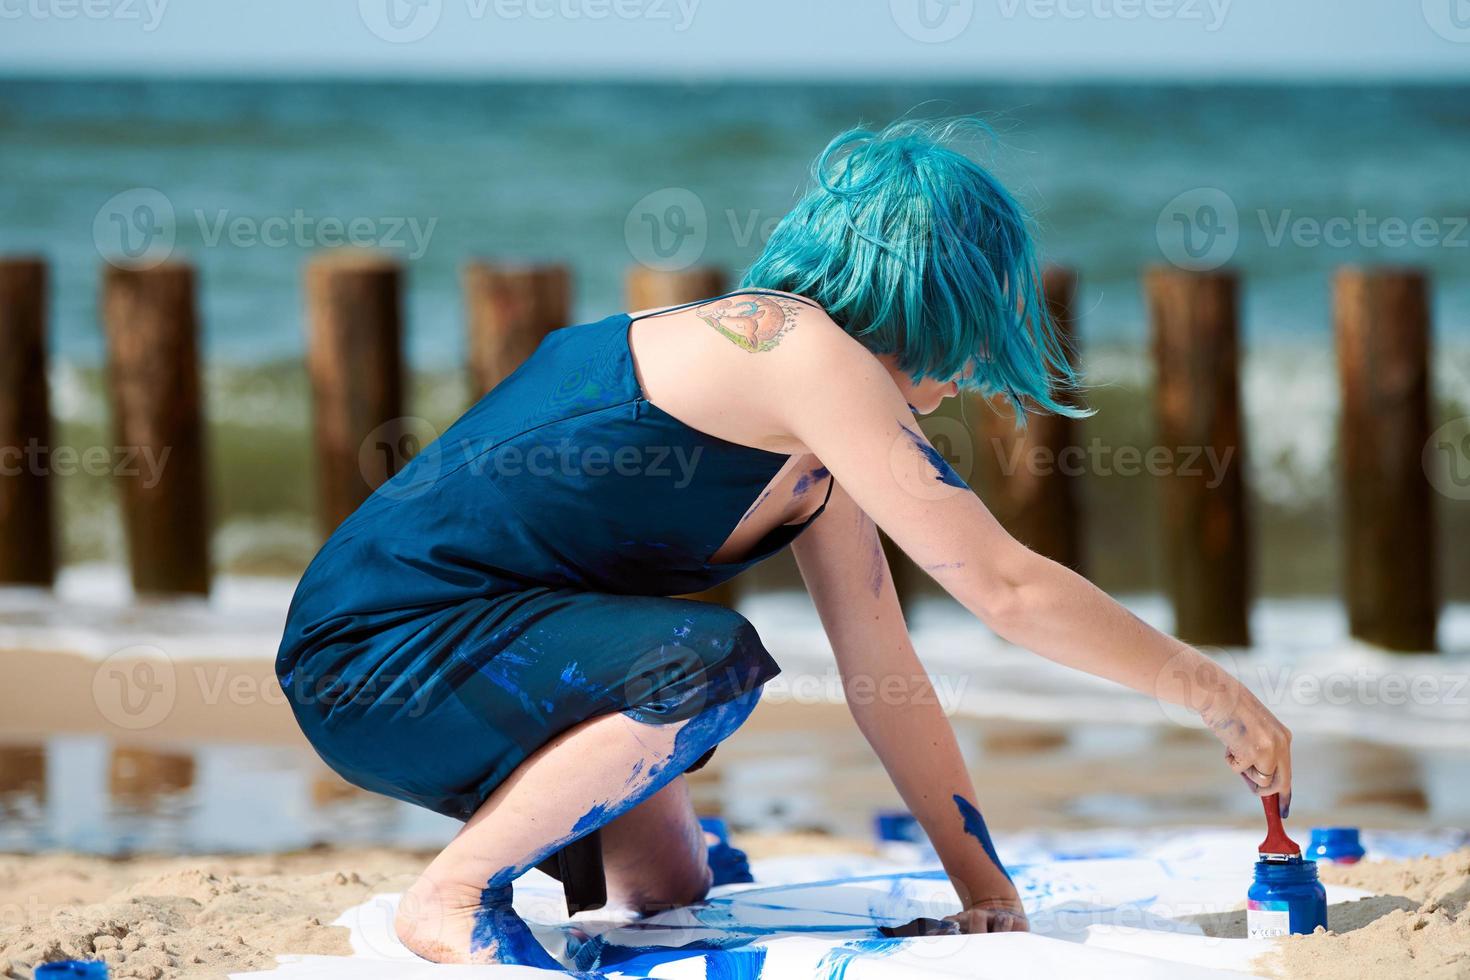 talentosa artista de performance de mujer de pelo azul untada con pinturas de gouache en un gran lienzo en la playa foto